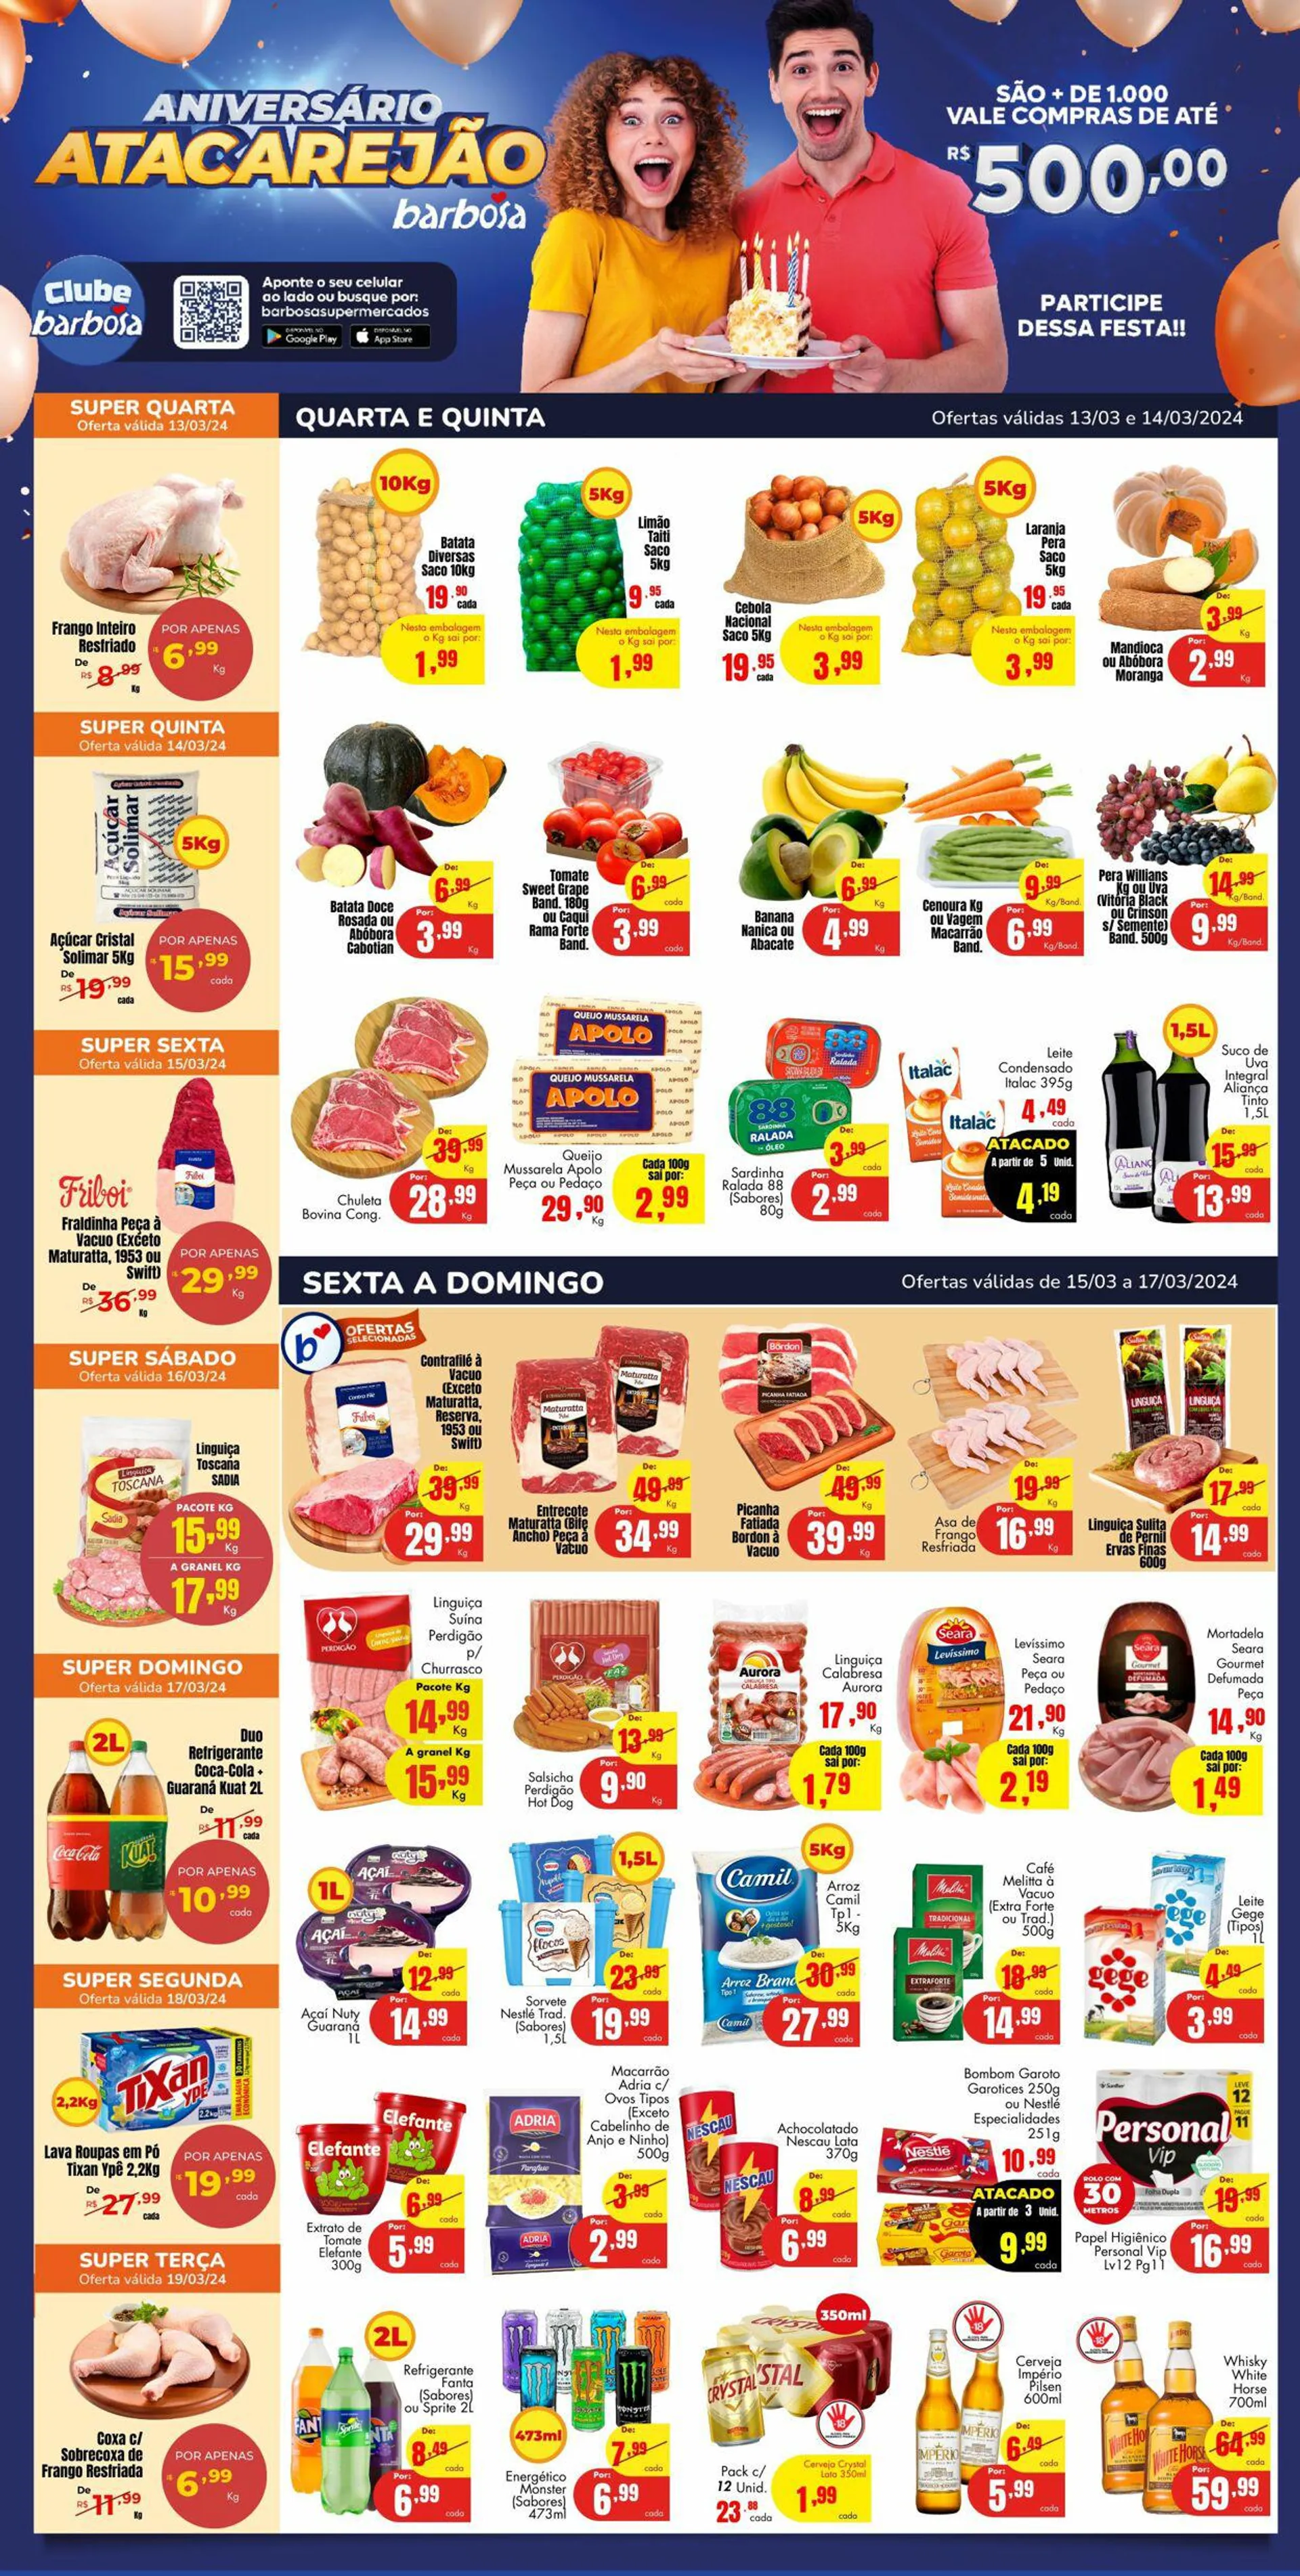 Encarte de Barbosa Supermercados 13 de março até 19 de março 2024 - Pagina 1